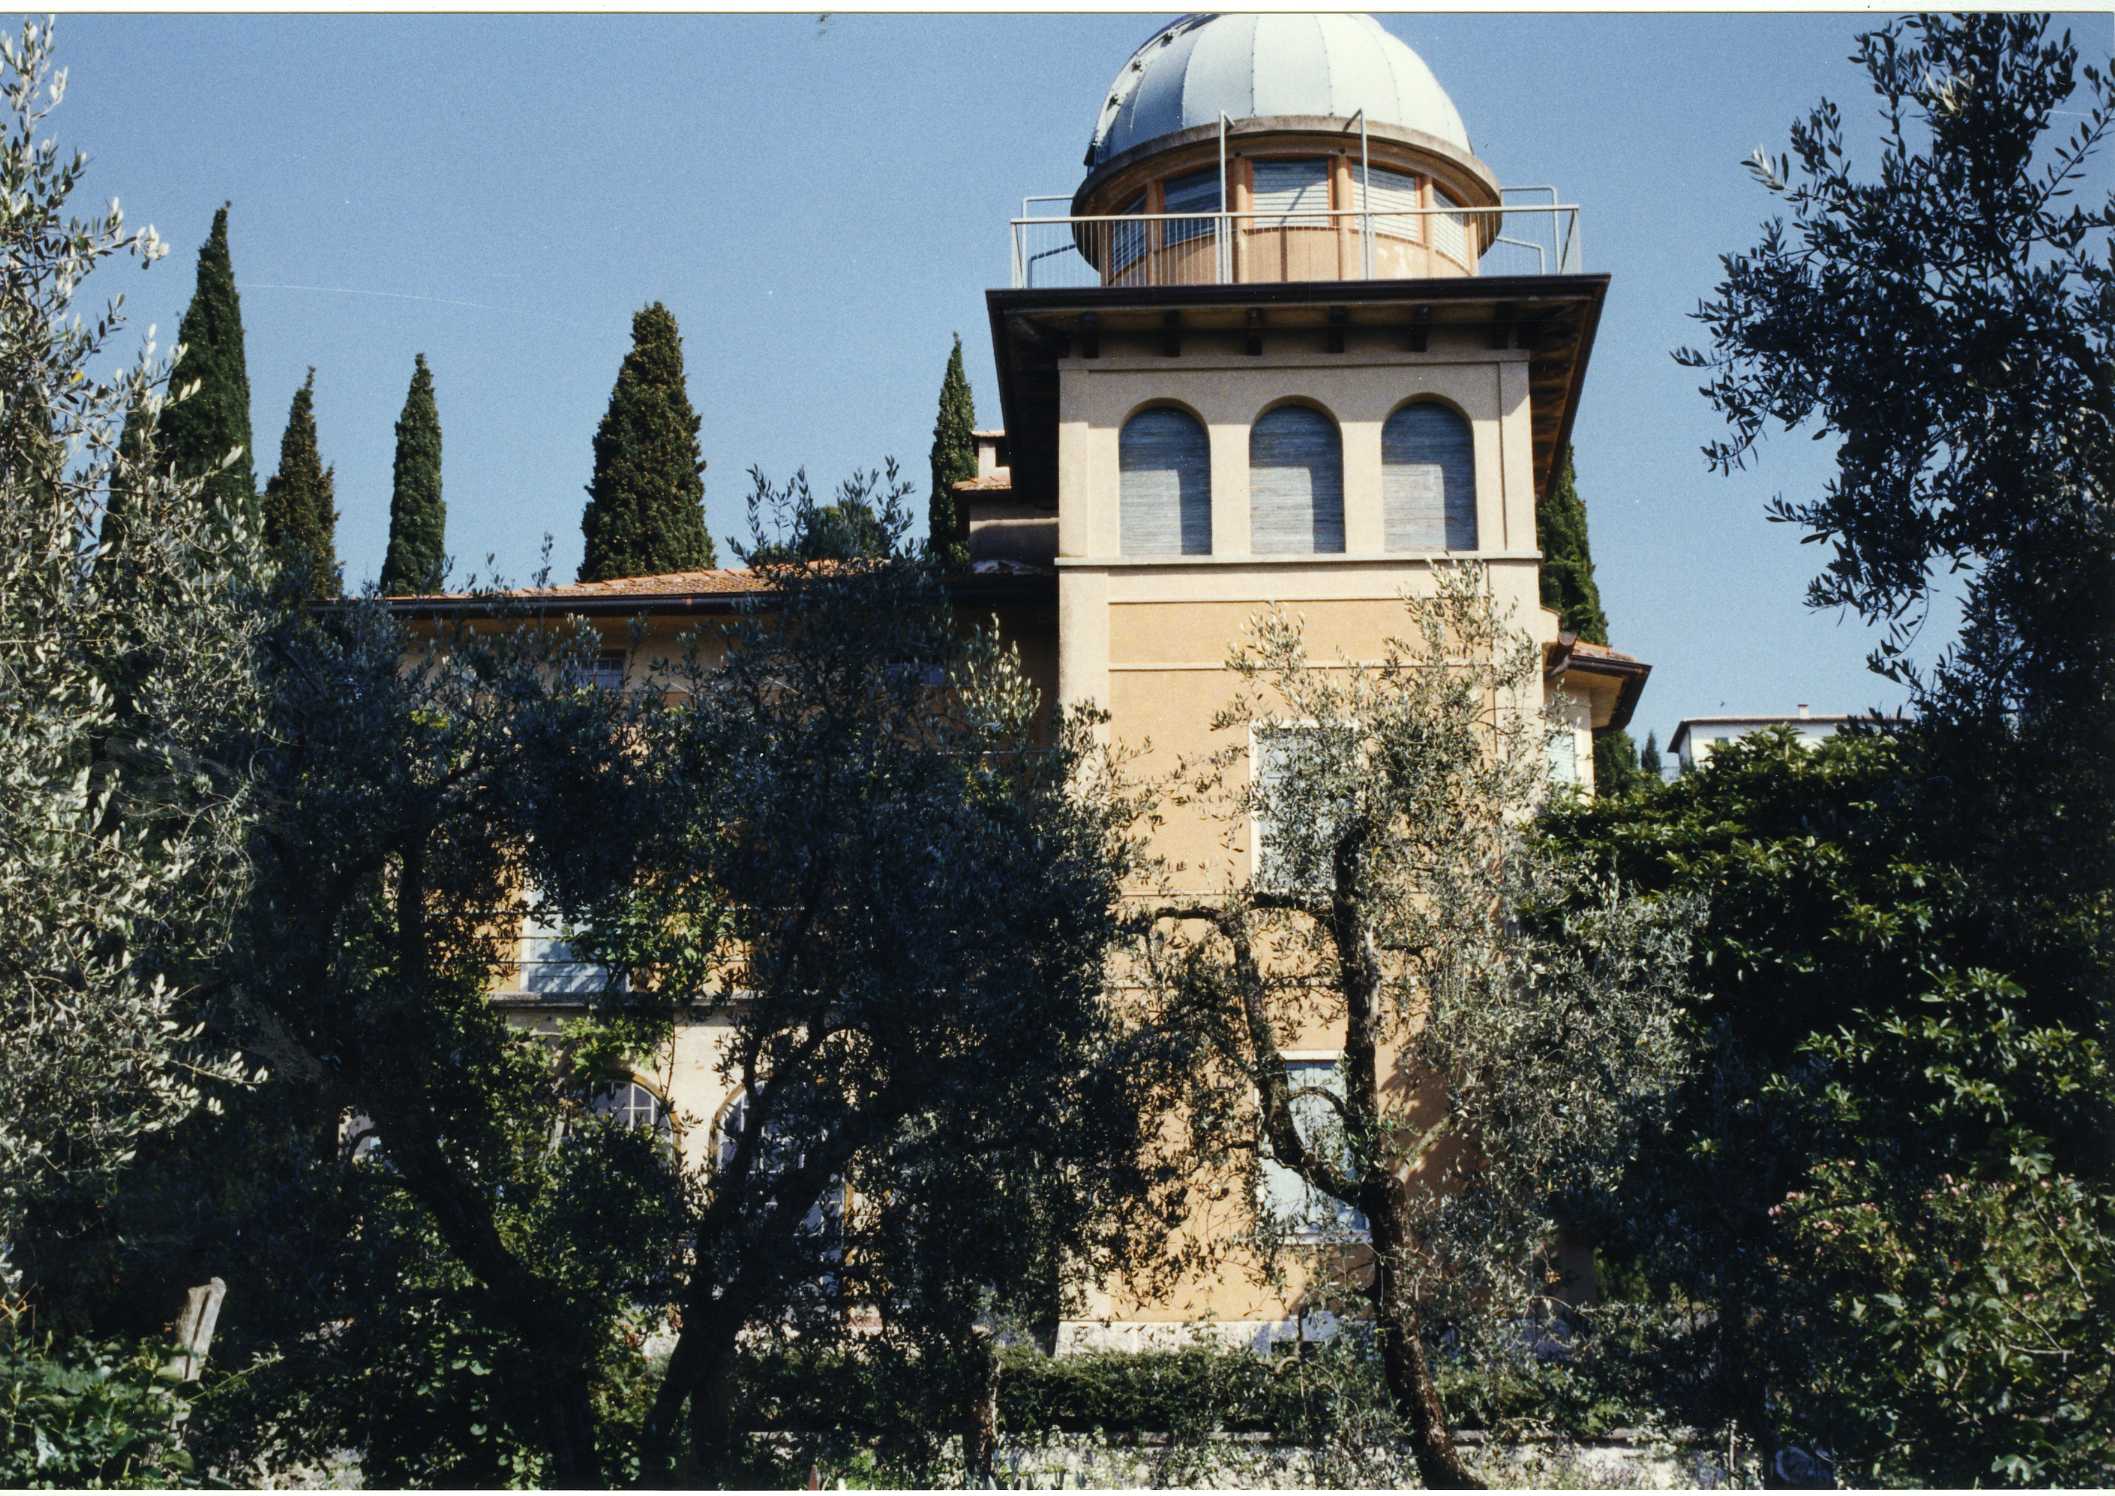 Villino Osservatorio Montagna-Bianchetti (villino) - Torri del Benaco (VR)  (XX, prima metà)